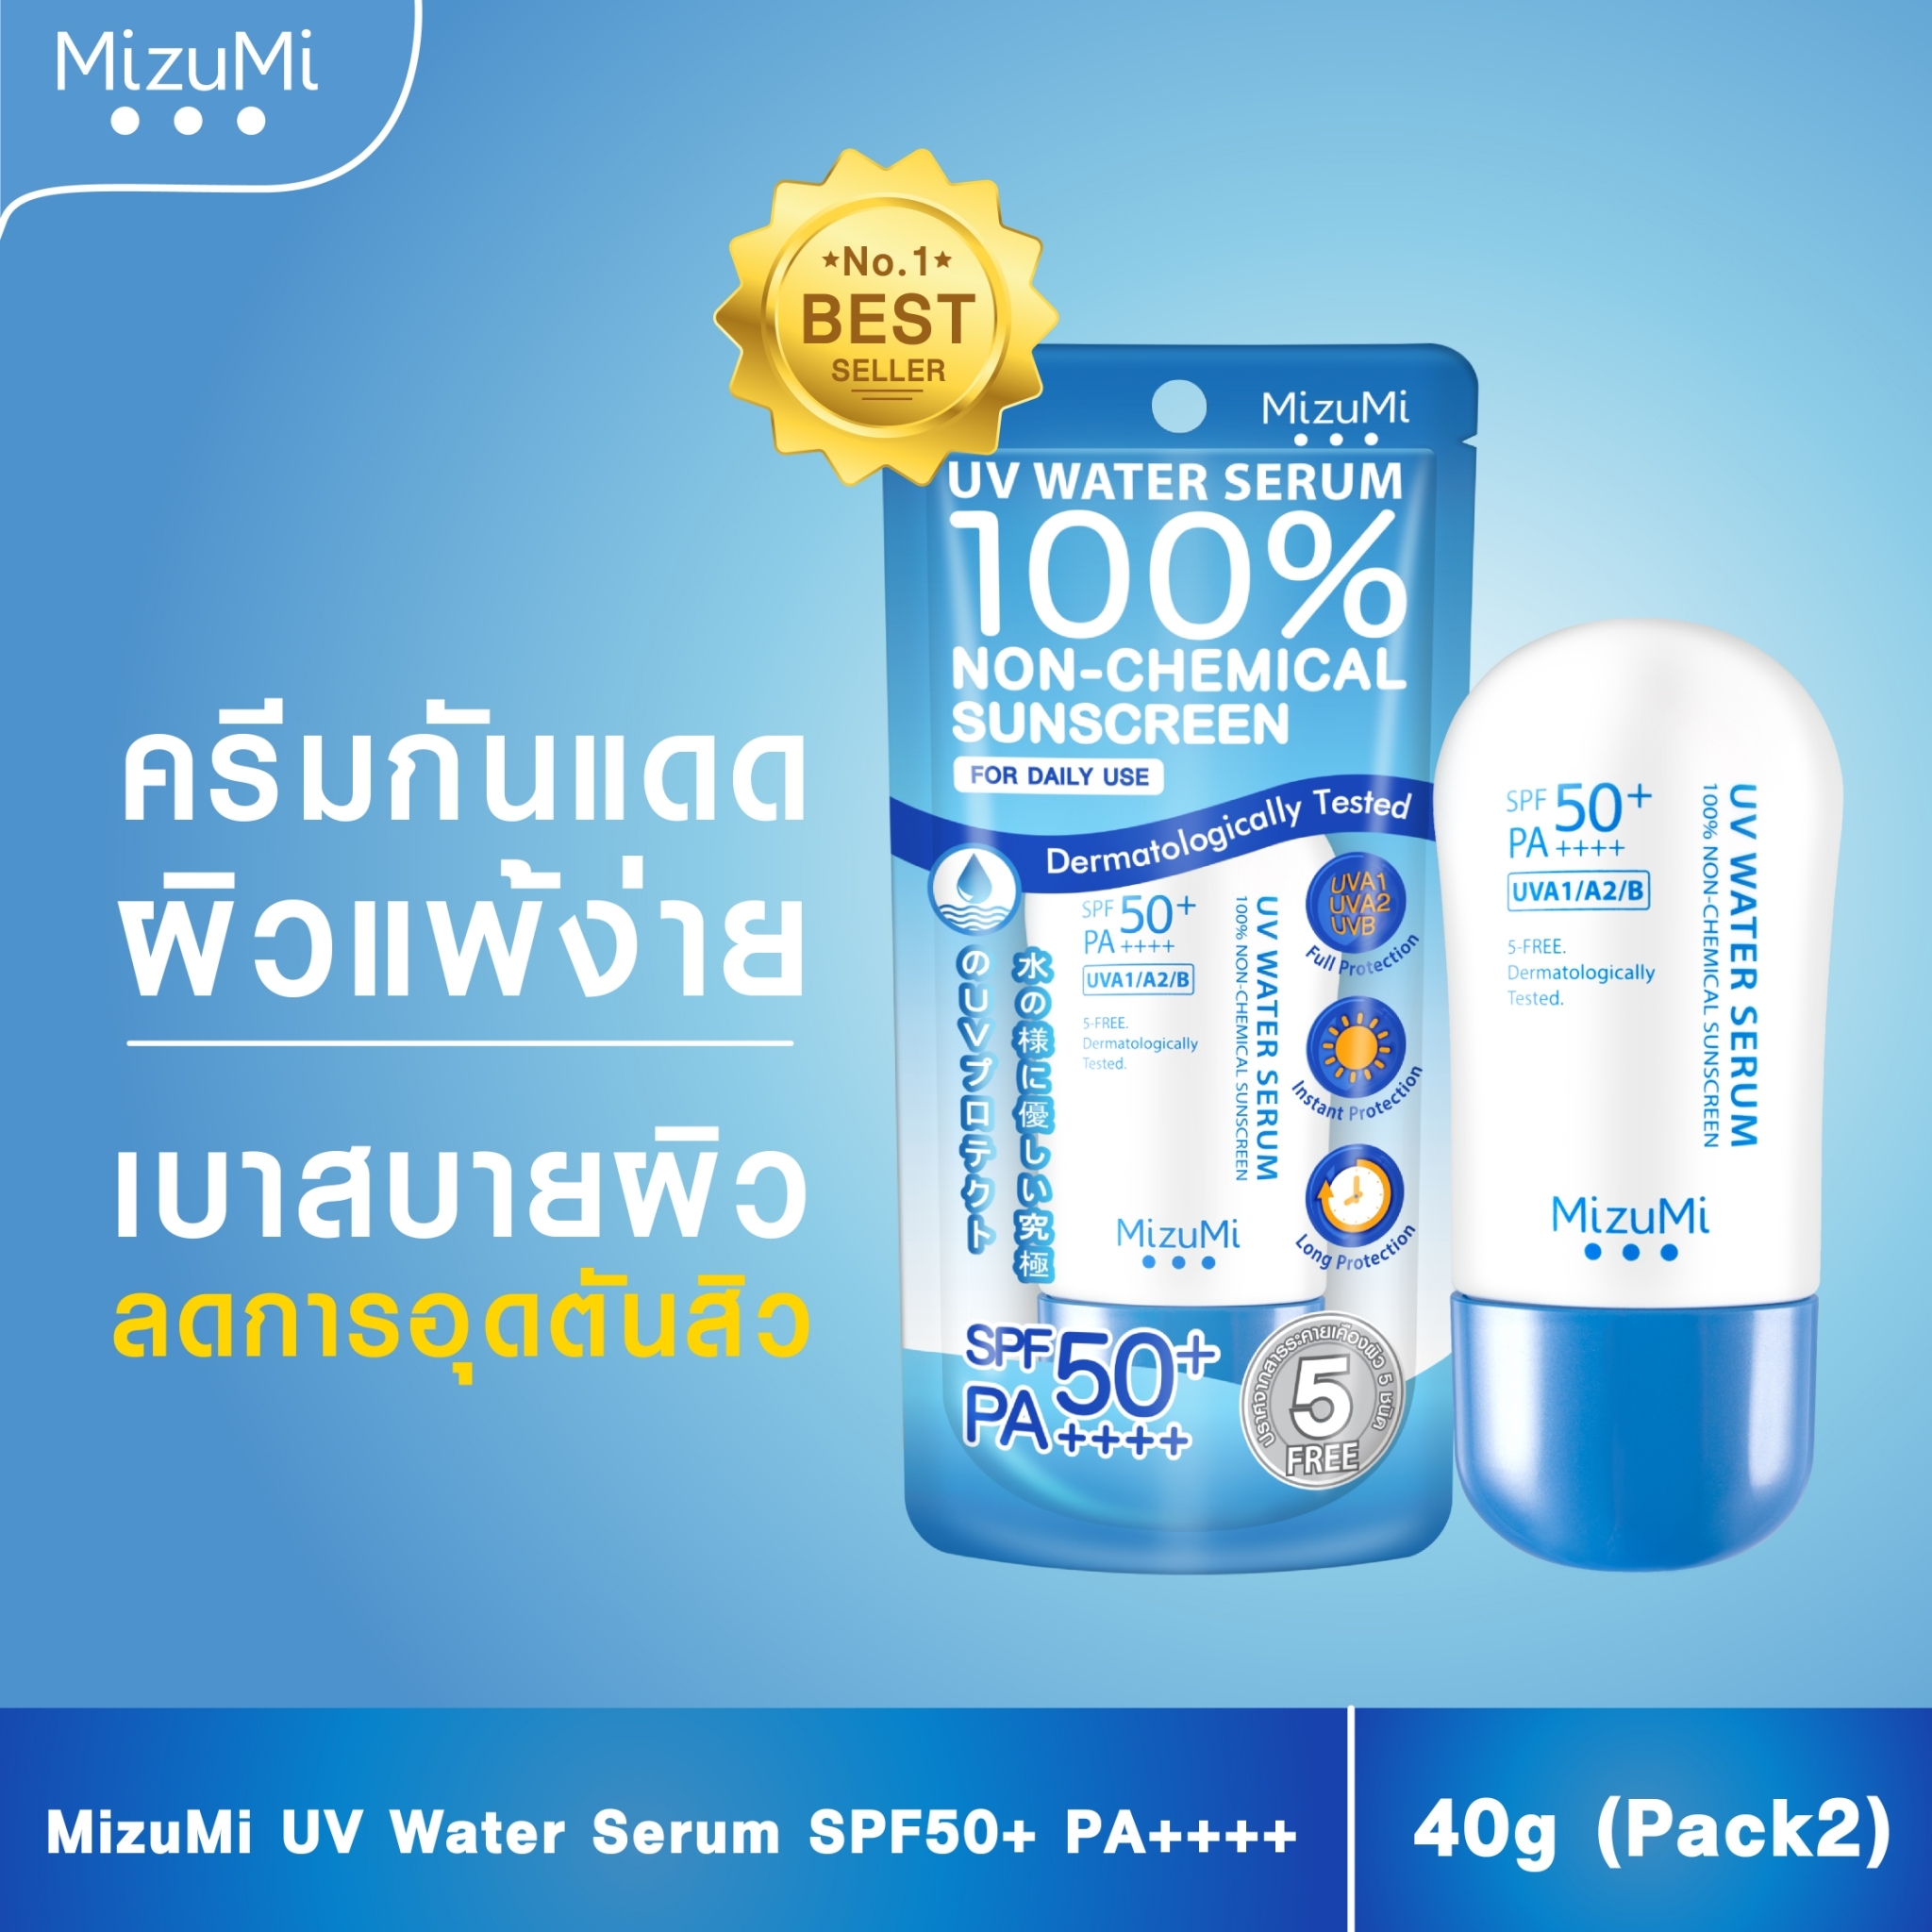 ราคา MizuMi UV Water Serum SPF50+ PA++++ 40g (Pack2) ครีมกันแดด ยอดขายอันดับ 1 สำหรับใช้ทุกวัน เนื้อเบาดุจน้ำ ออกแดดได้ทันที เพื่อผิวแพ้ง่าย ผิวเป็นสิว